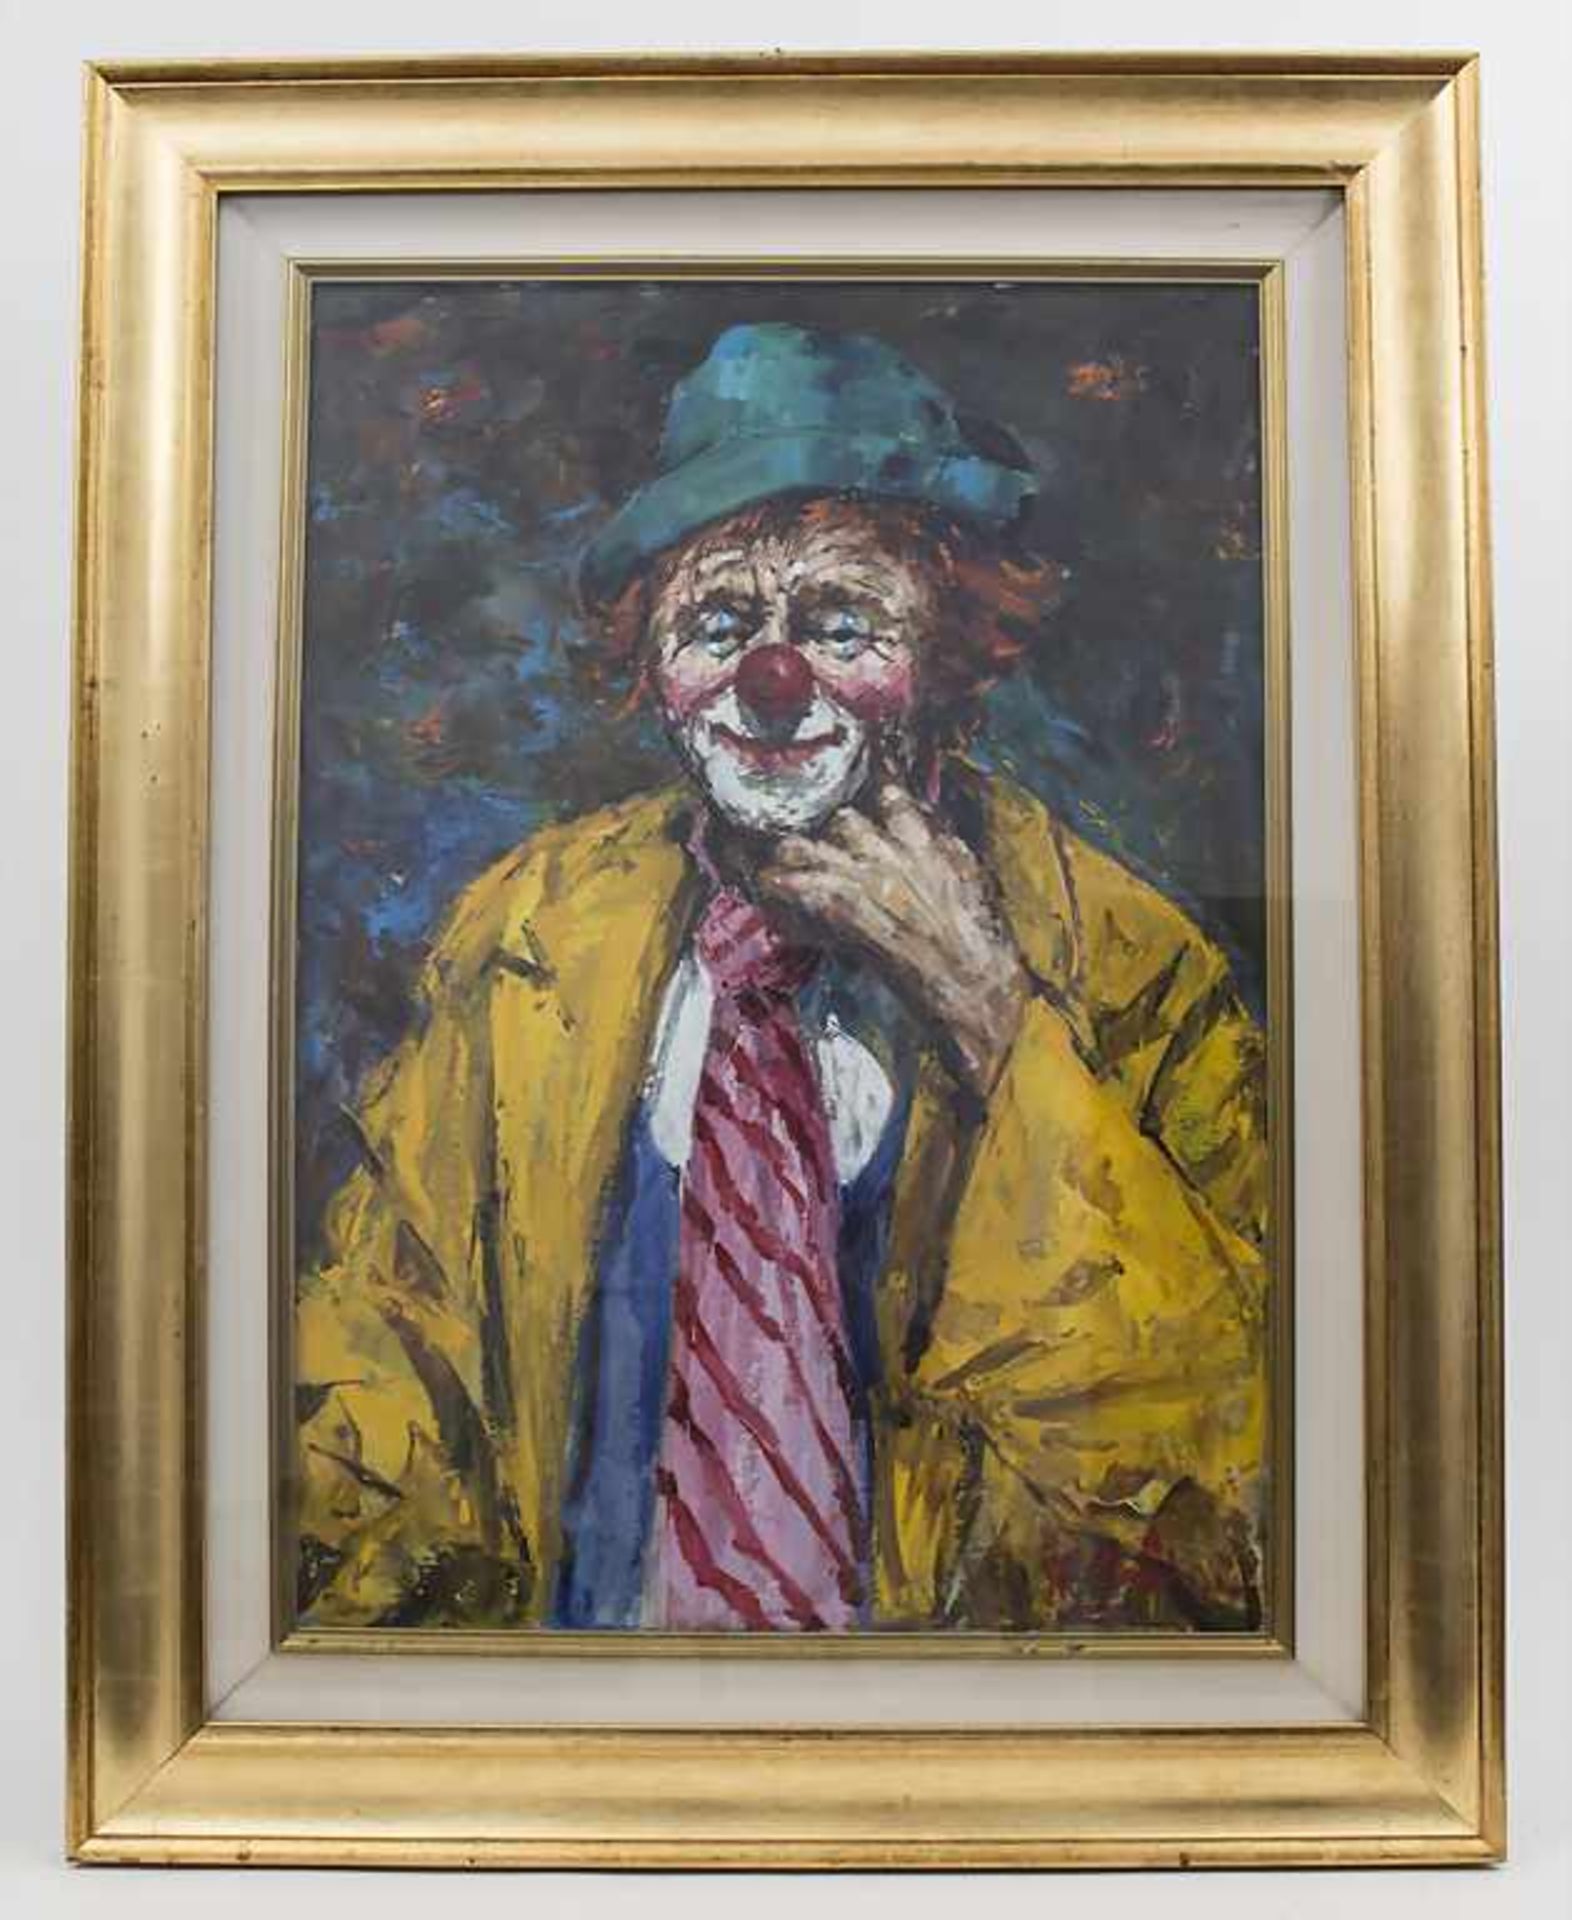 Undeutlich signierender Künstler (20. Jh.), 'Clown' Technik: Öl auf Leinwand, gerahmt, hinter - Bild 2 aus 5